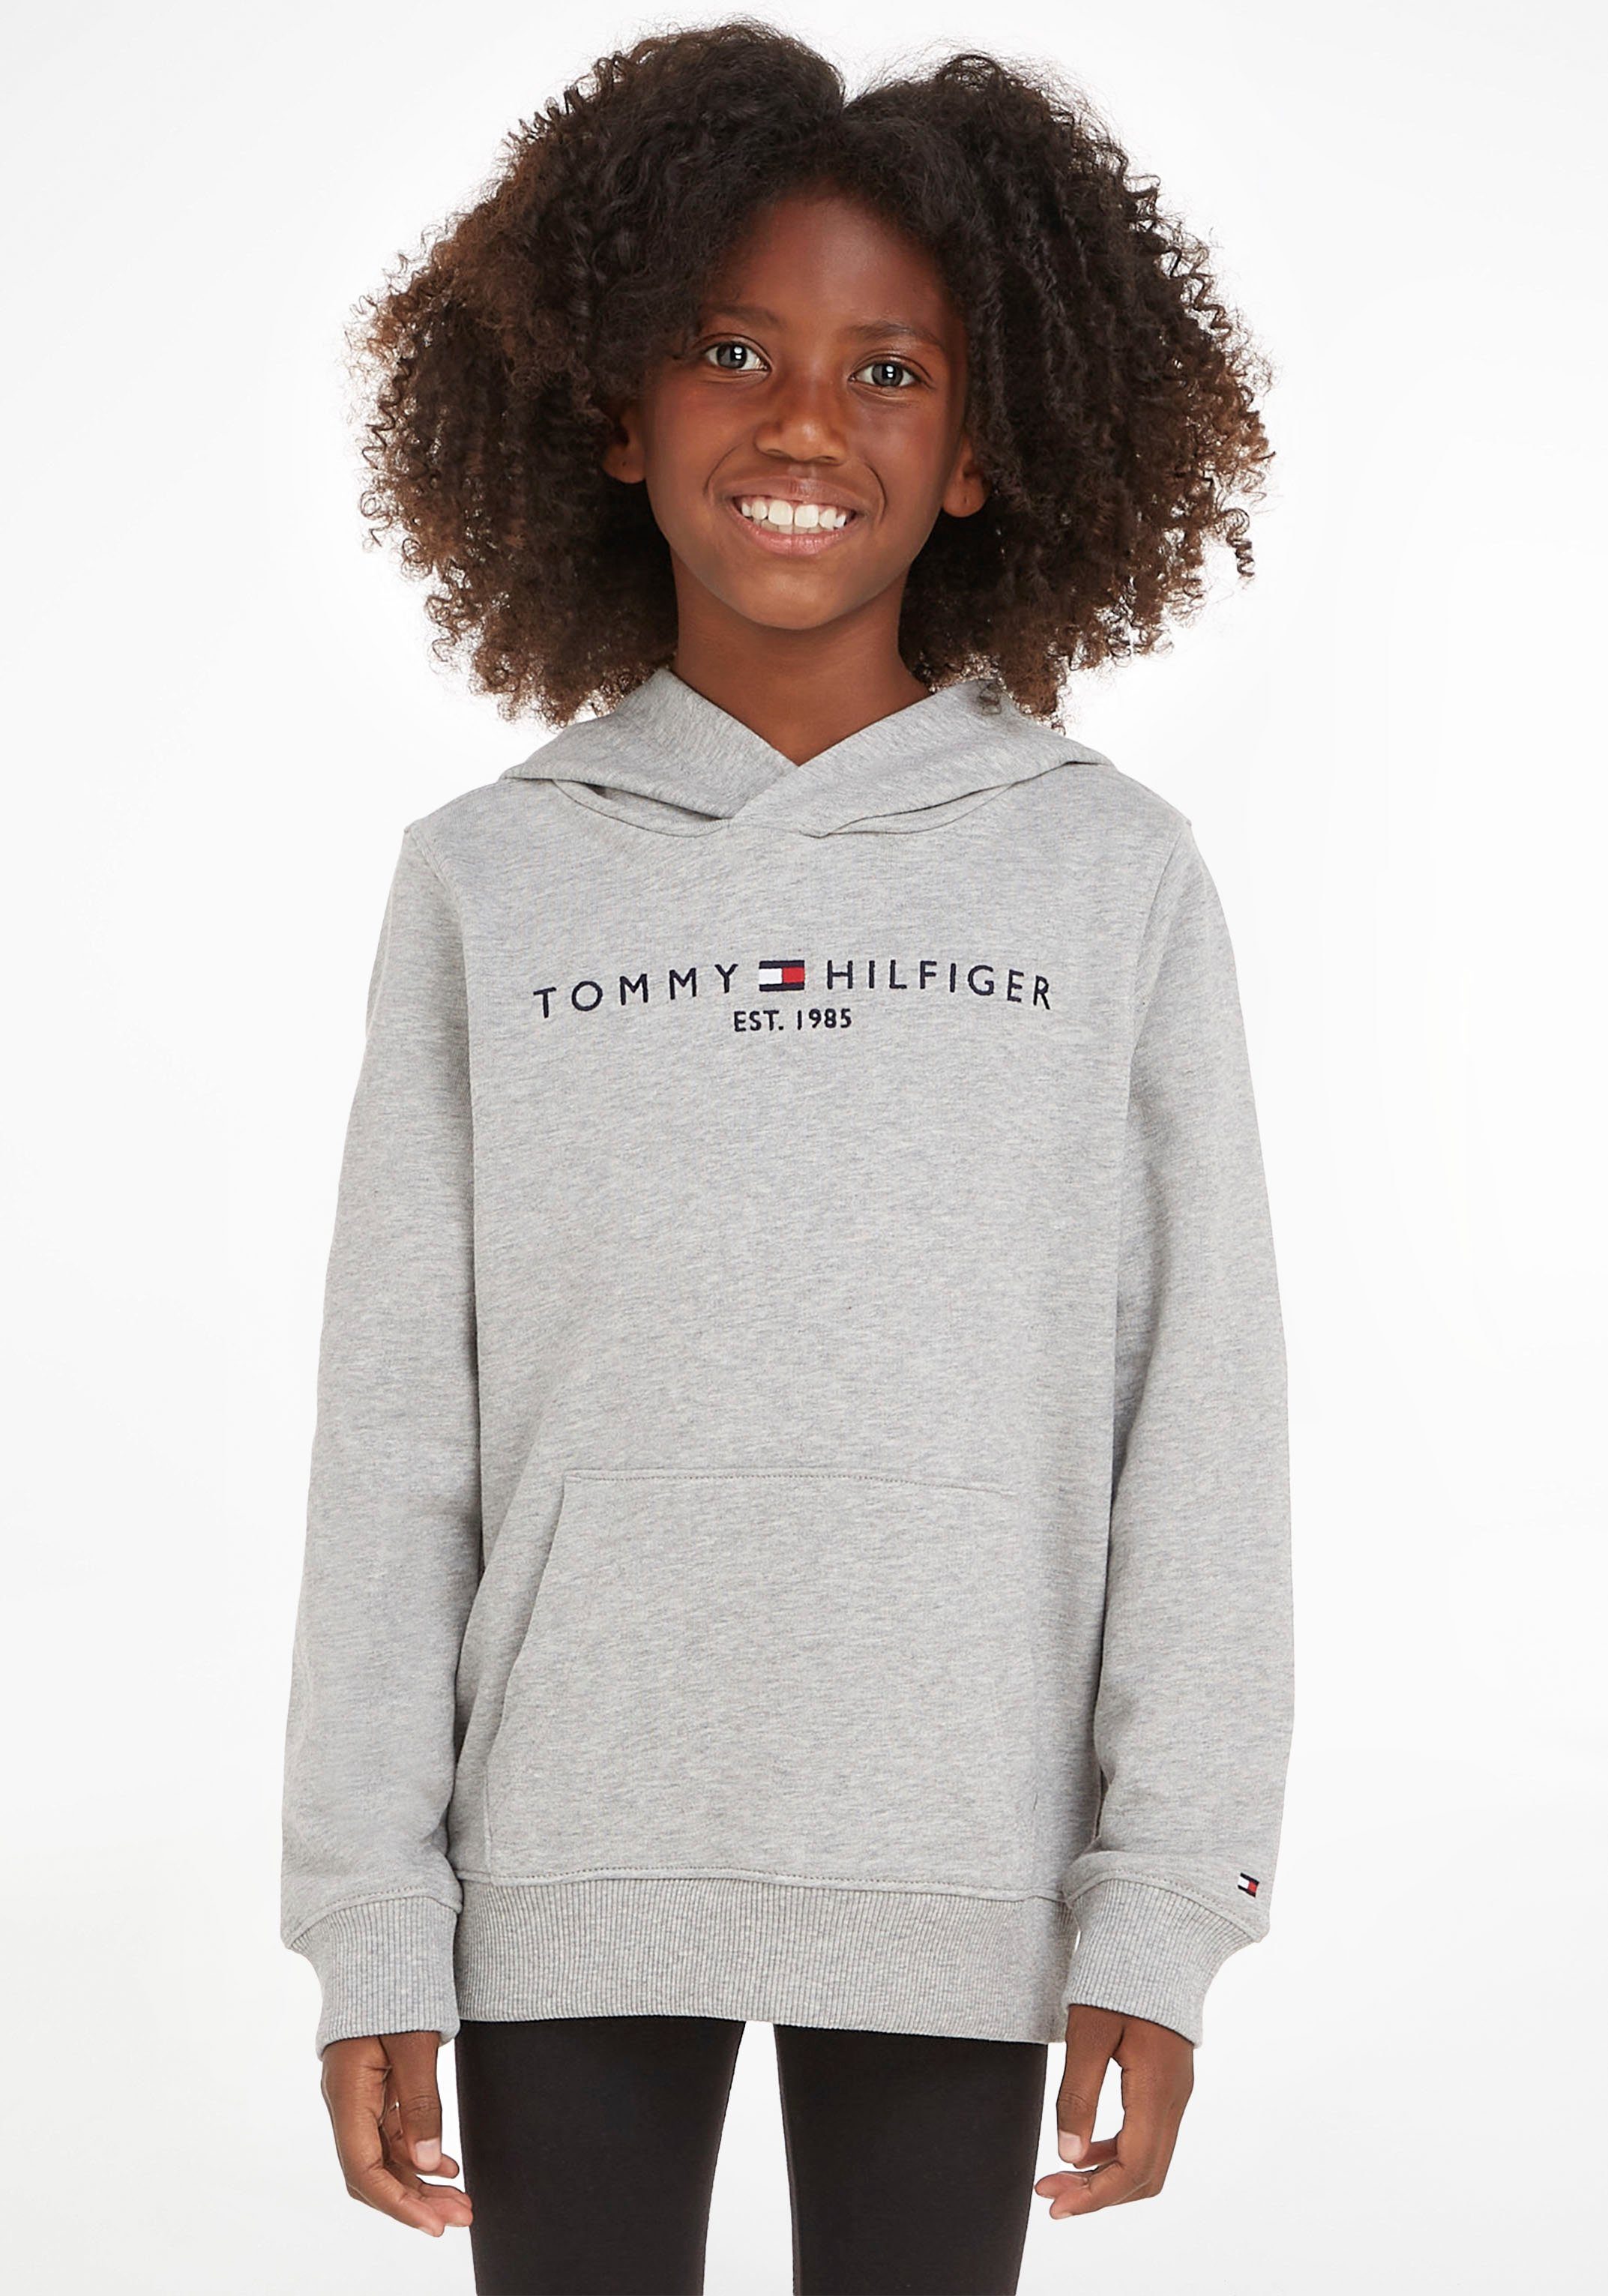 Tommy Hilfiger Kapuzensweatshirt für und Jungen Kinder Mädchen, TOMMY ESSENTIAL Junior von Sweatshirt und MiniMe,für HILFIGER Kids Jungen HOODIE Mädchen